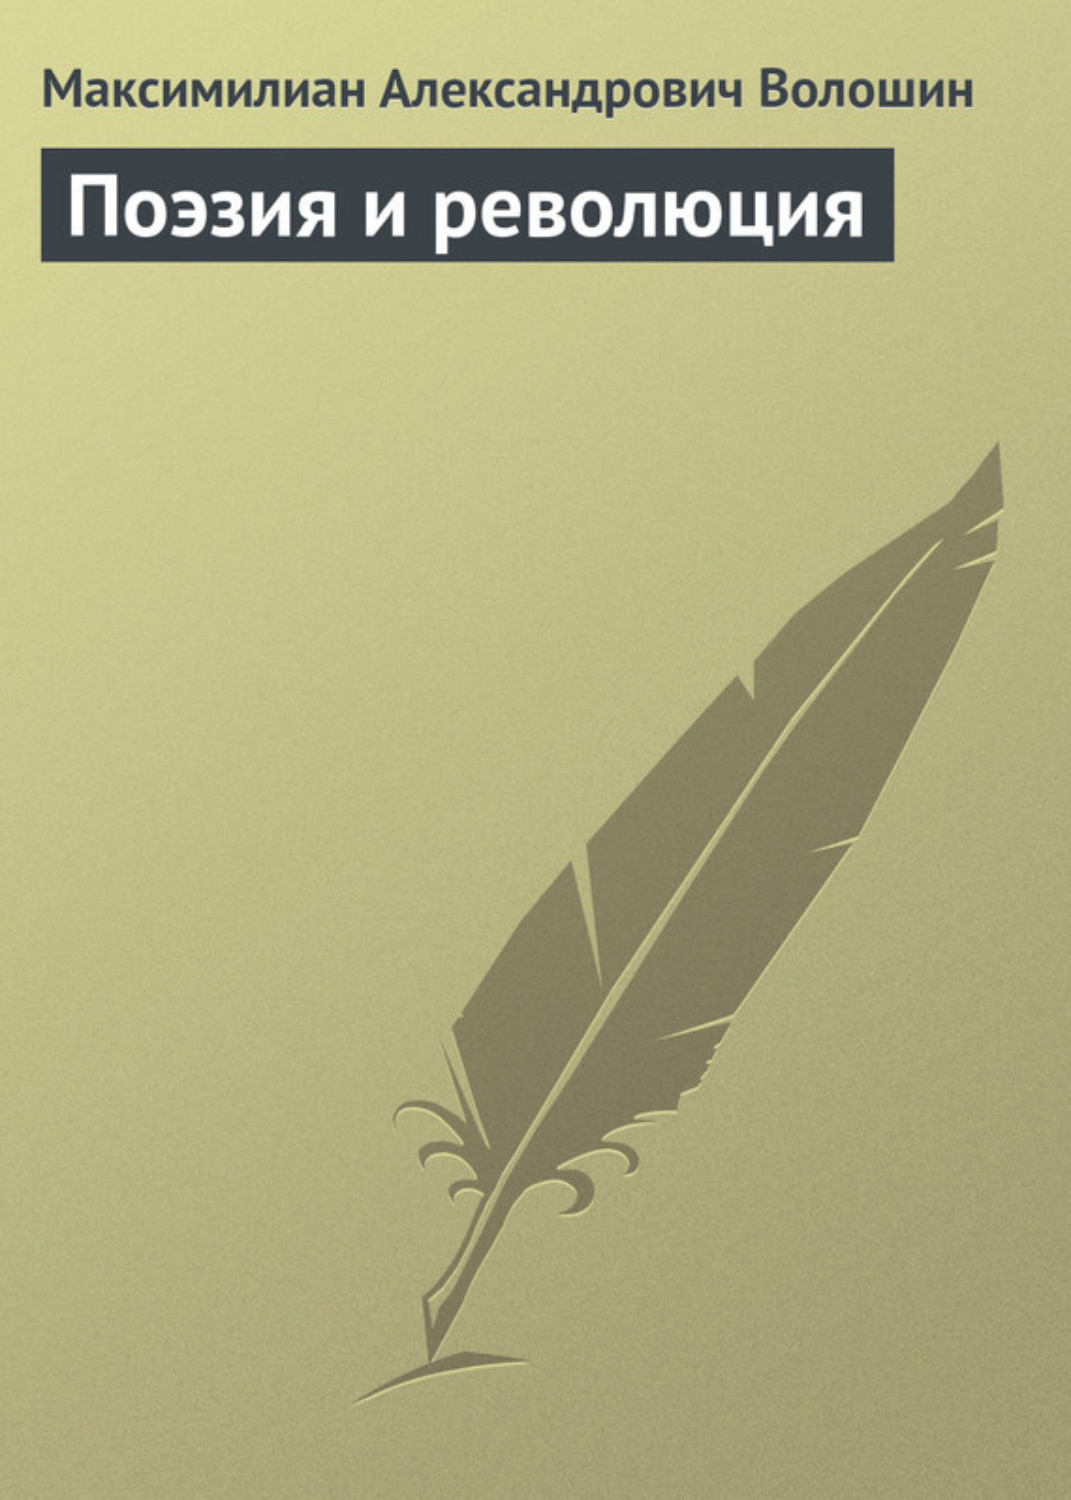 Максимилиан Волошин: поэт в огне революции и гражданской войны